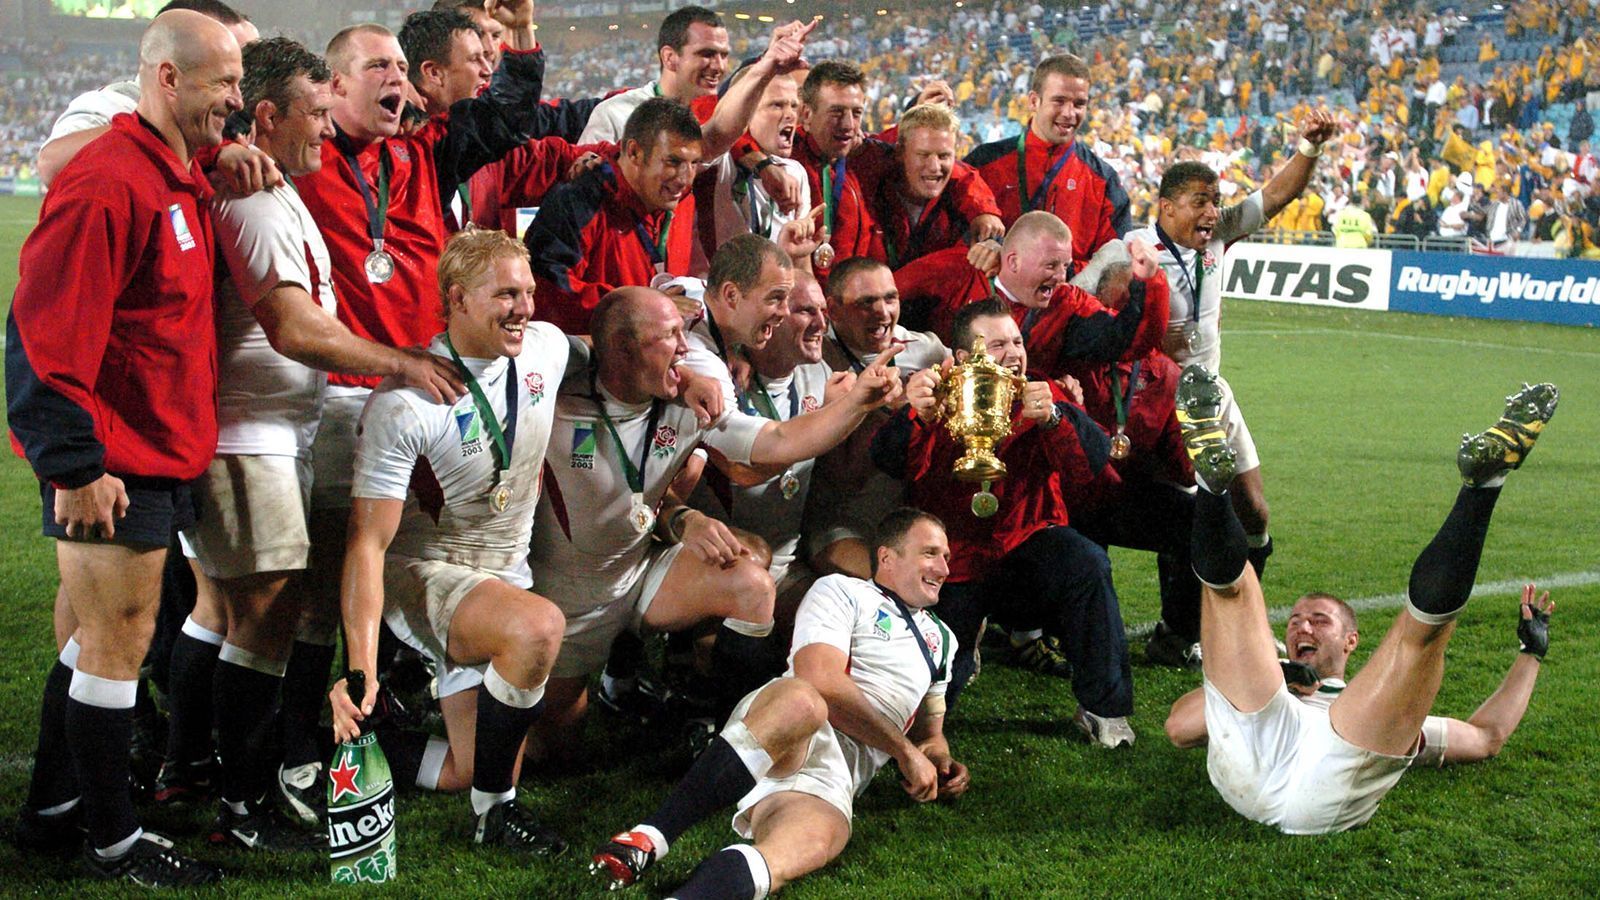 <strong>England 2003</strong><br>
                Gastgeber: Australien; Finale: England - Australien 20:17 n.V.
